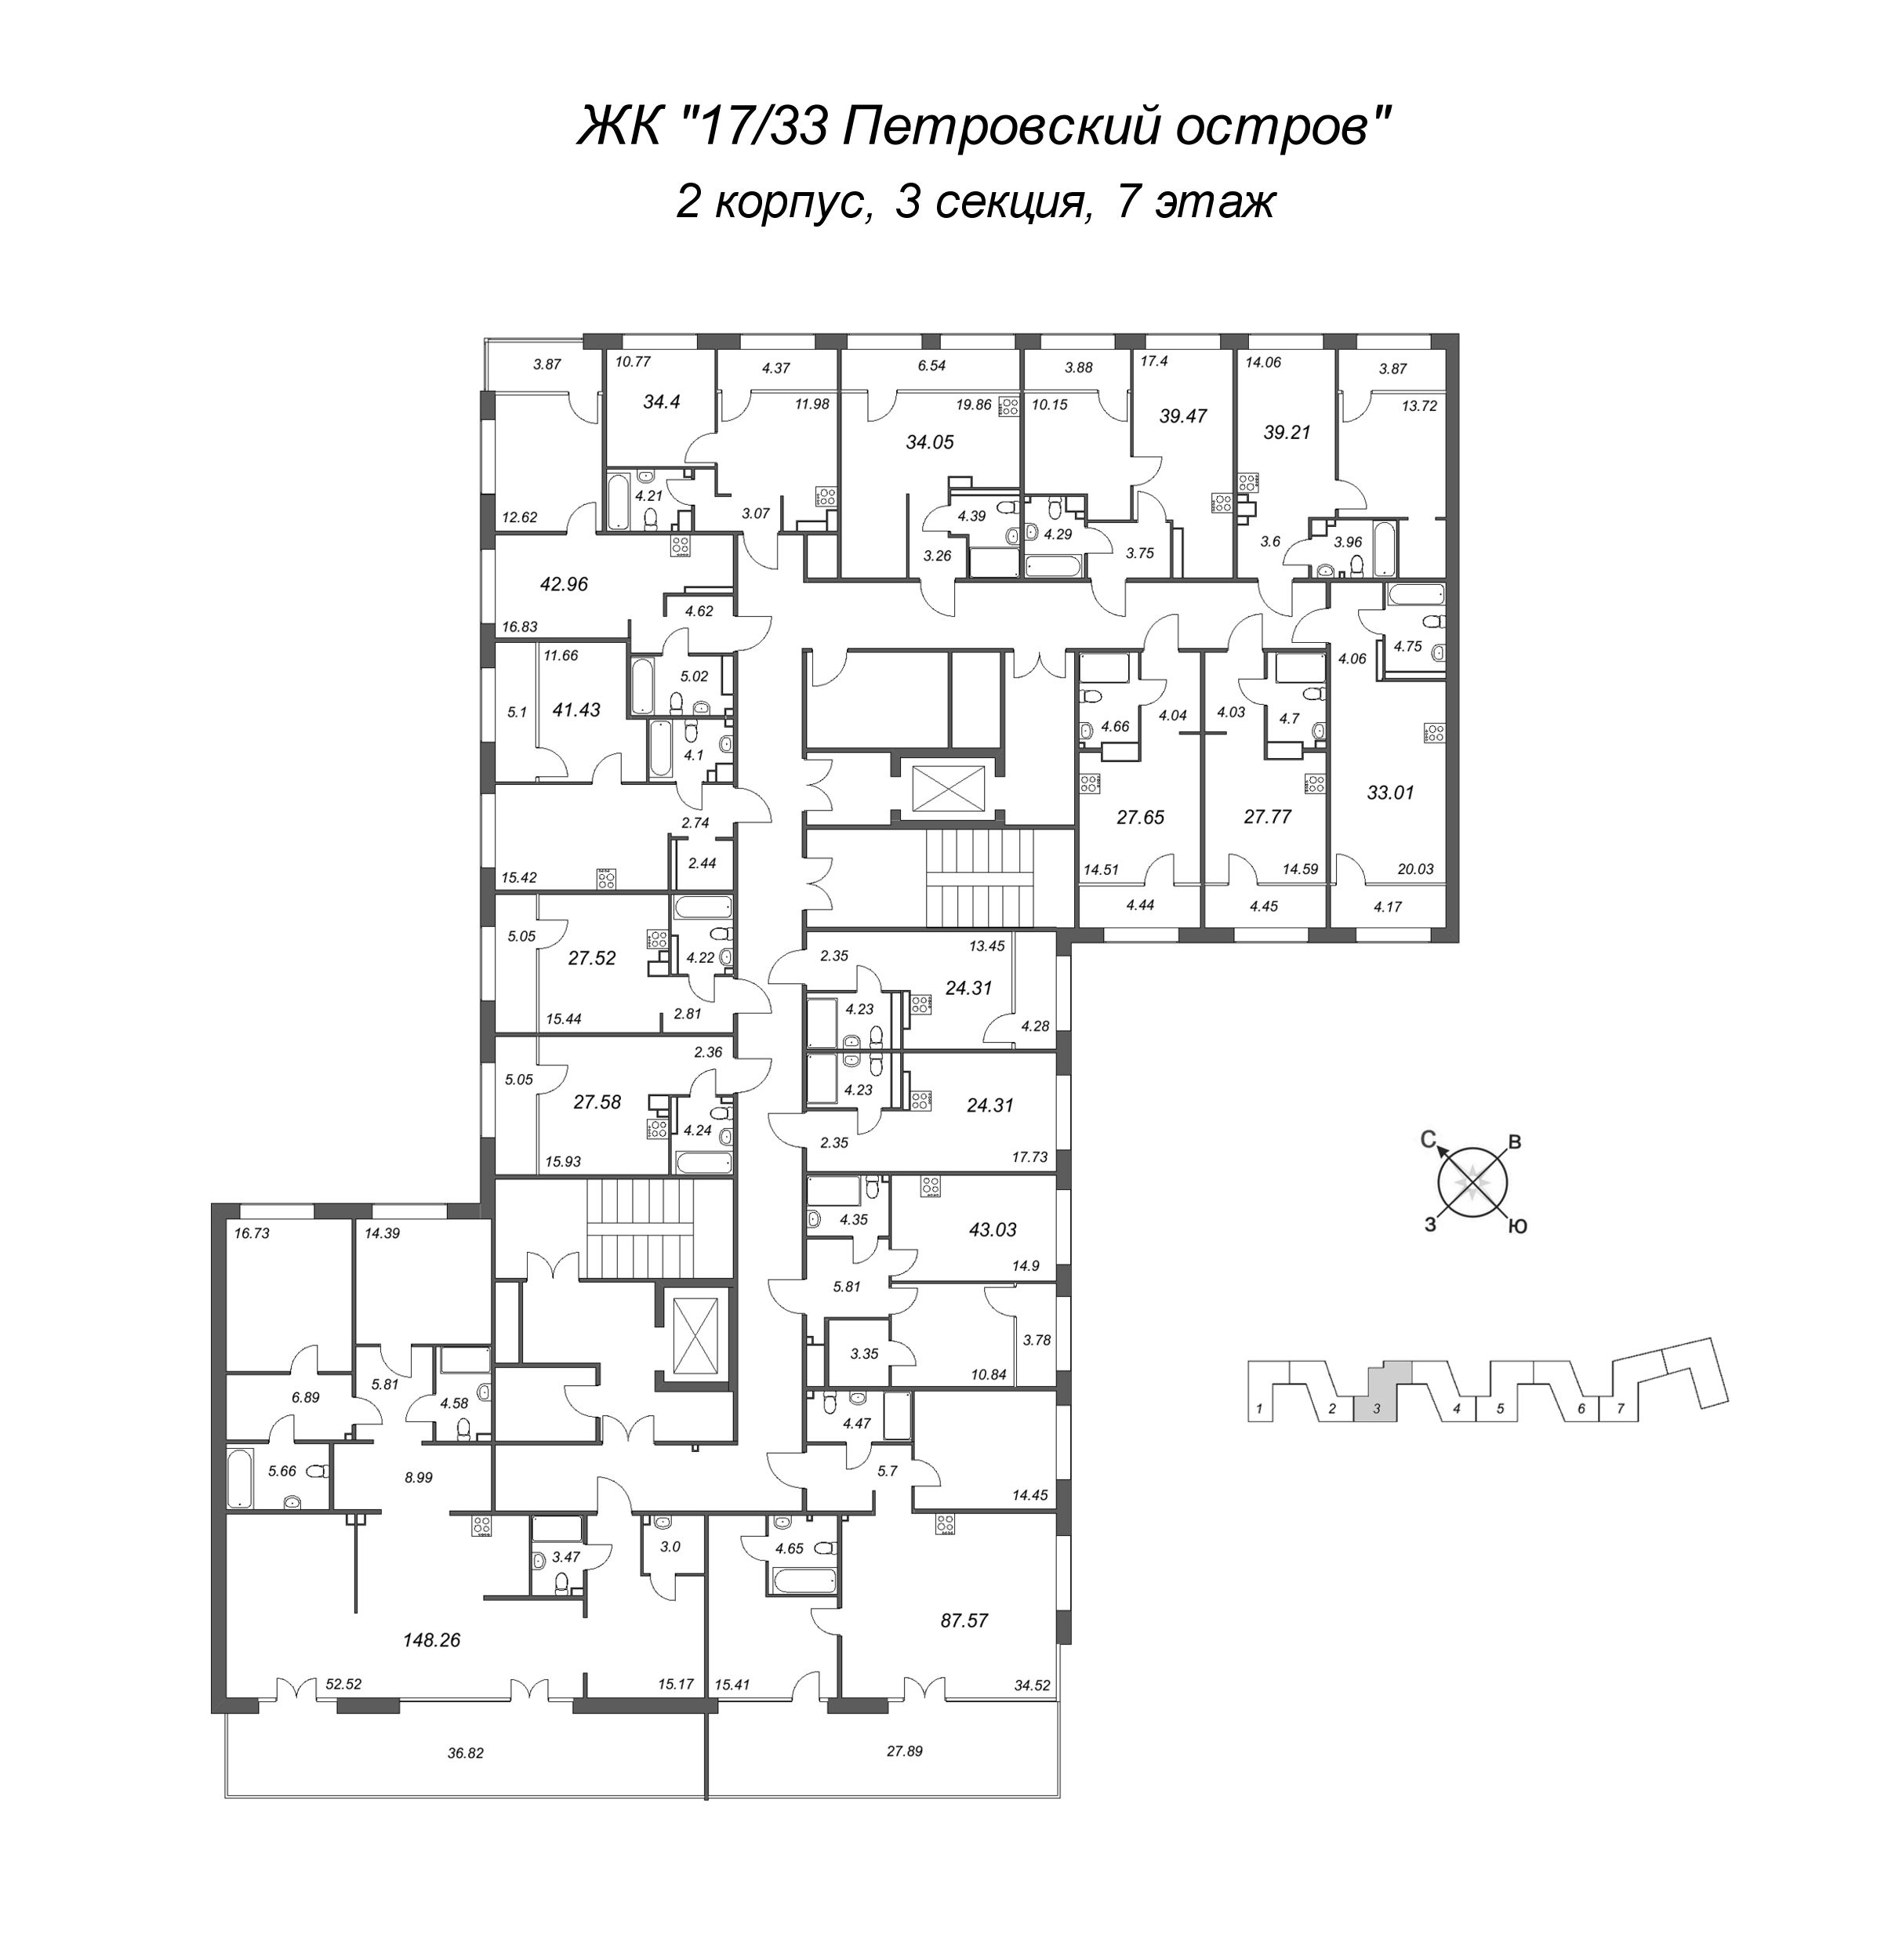 2-комнатная (Евро) квартира, 41.43 м² в ЖК "17/33 Петровский остров" - планировка этажа